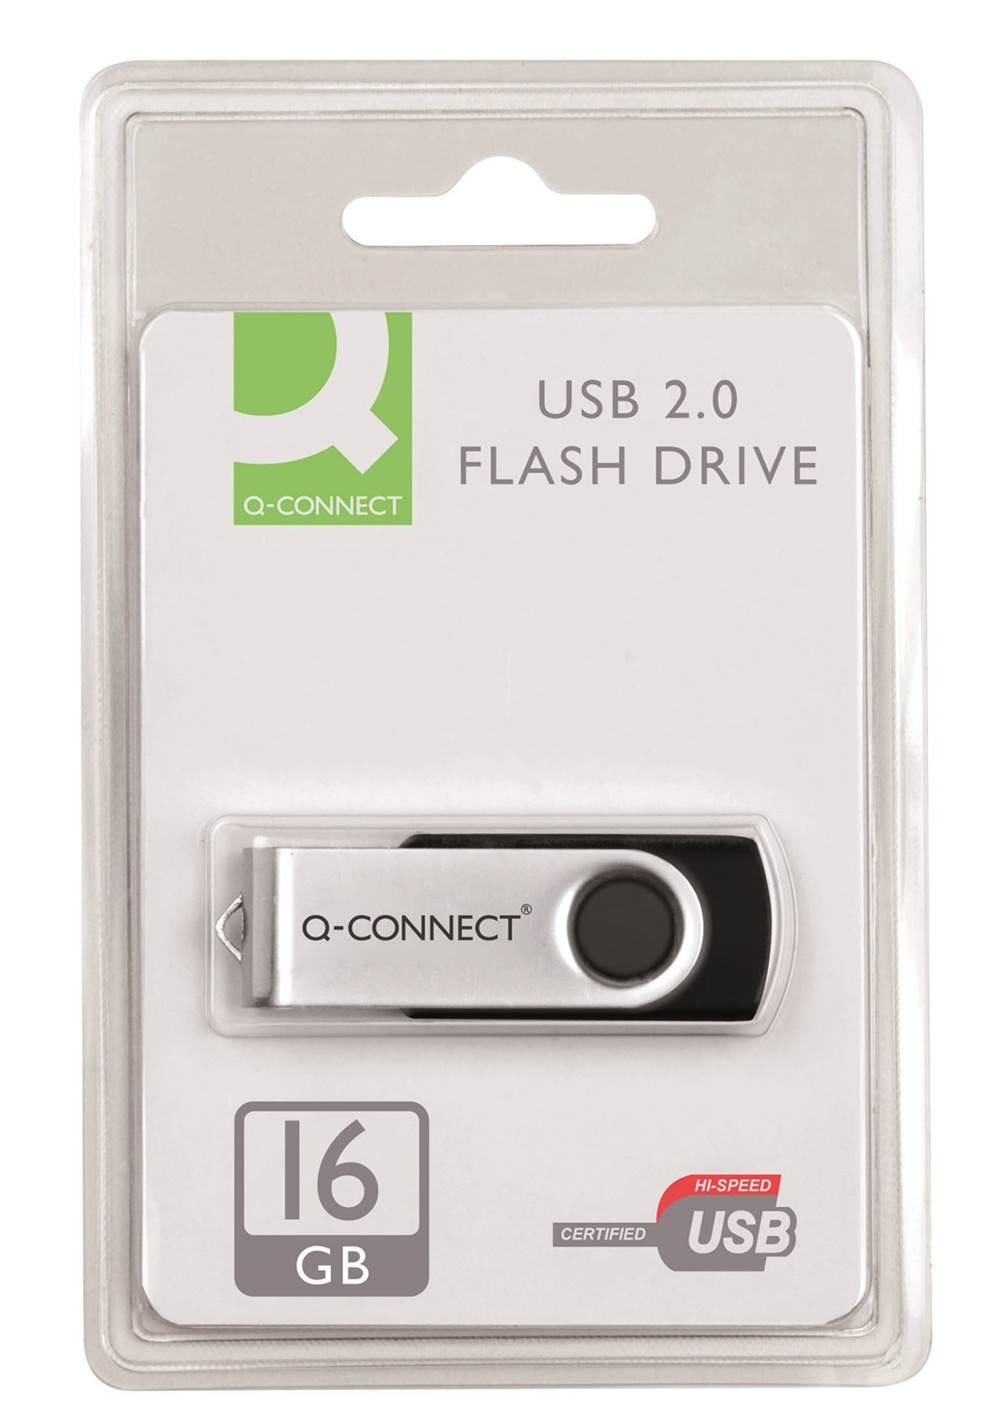 Nośnik pamięci Q-CONNECT USB, 16GB